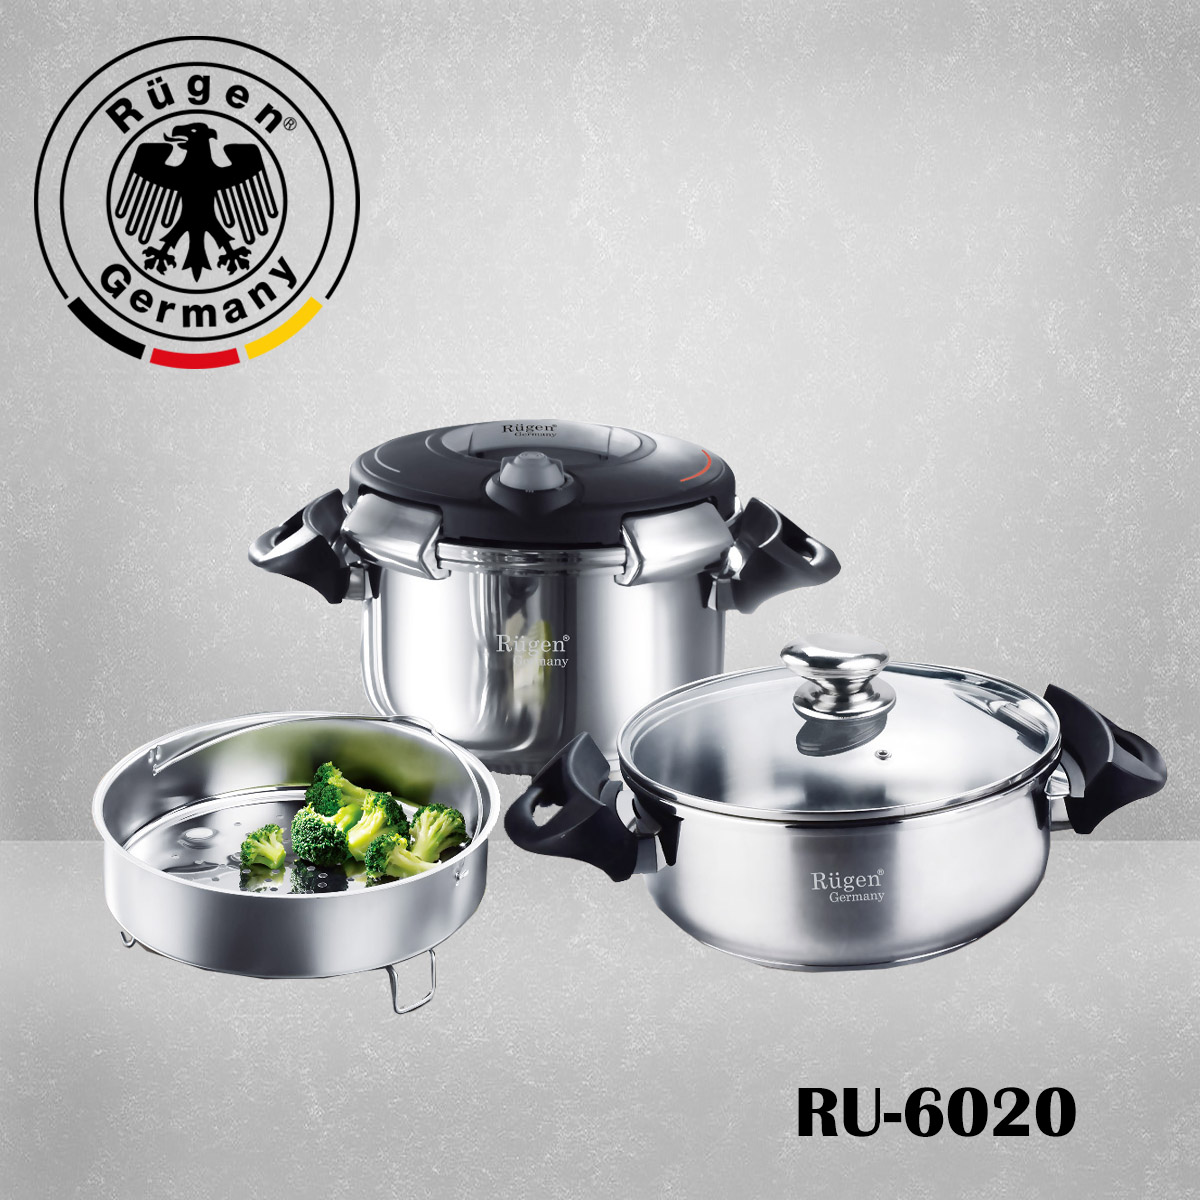 زودپز روگازی دوقلو روگن مدل Rugen twin Pressure cooker Ru-6020